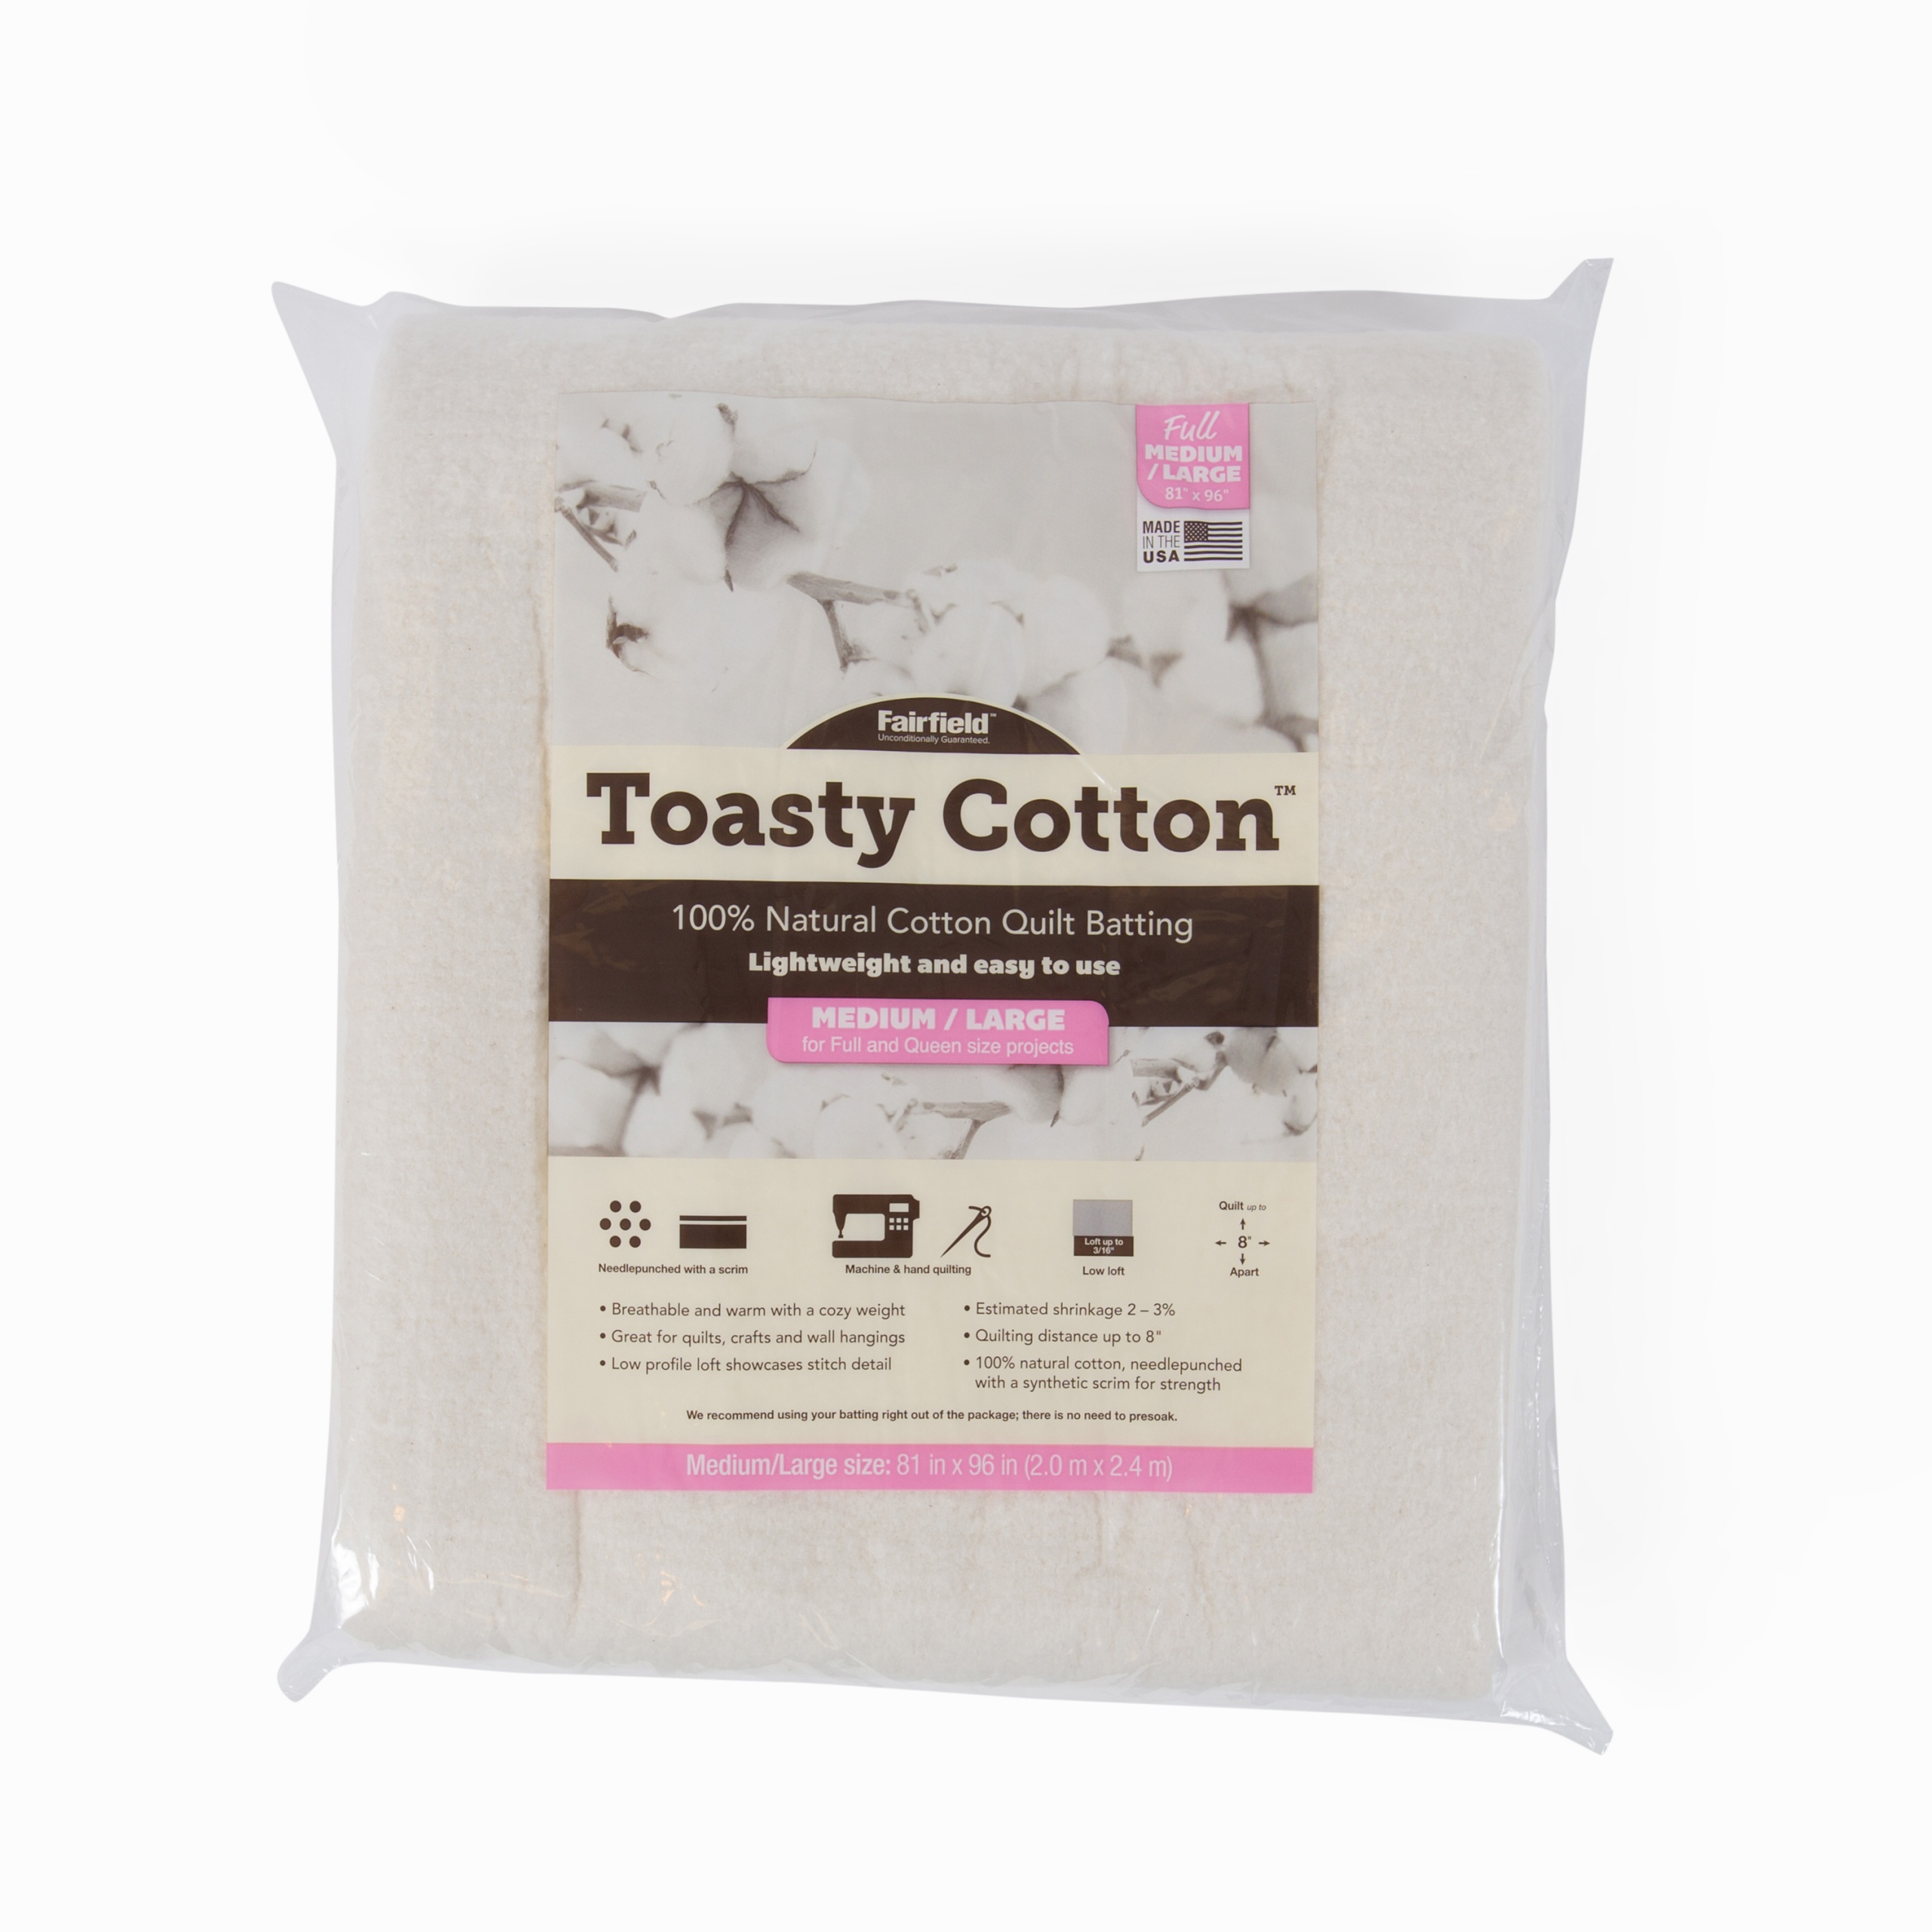 Toasty Cotton - full